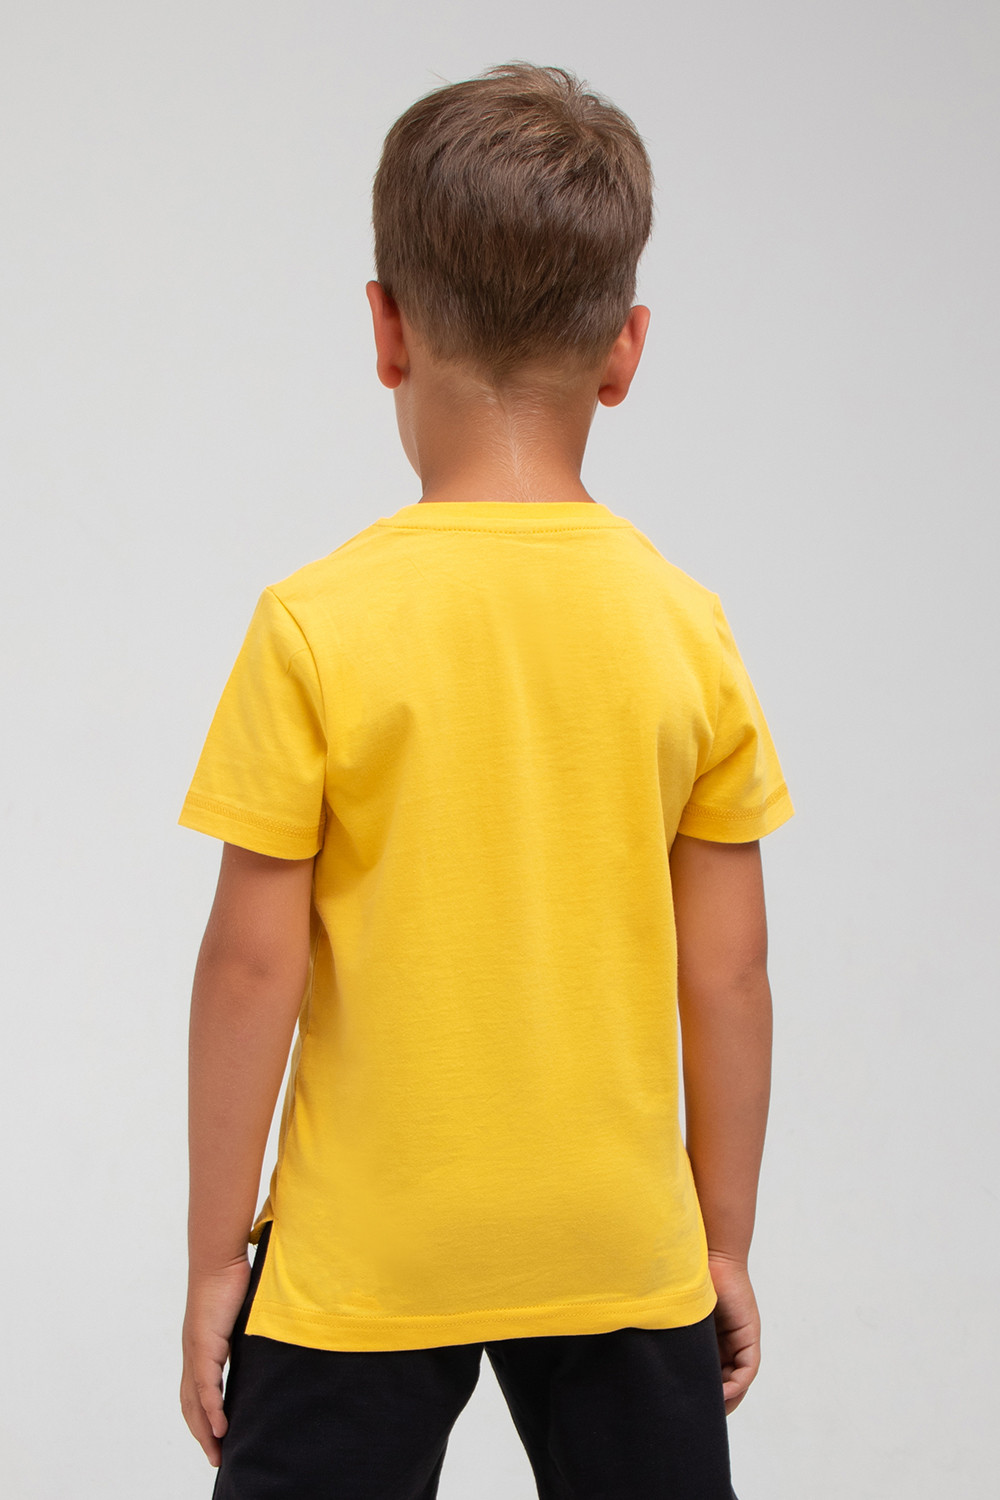 картинка Футболка для мальчика Crockid К 301632 желтый к1283 от магазина детских товаров ALiSa